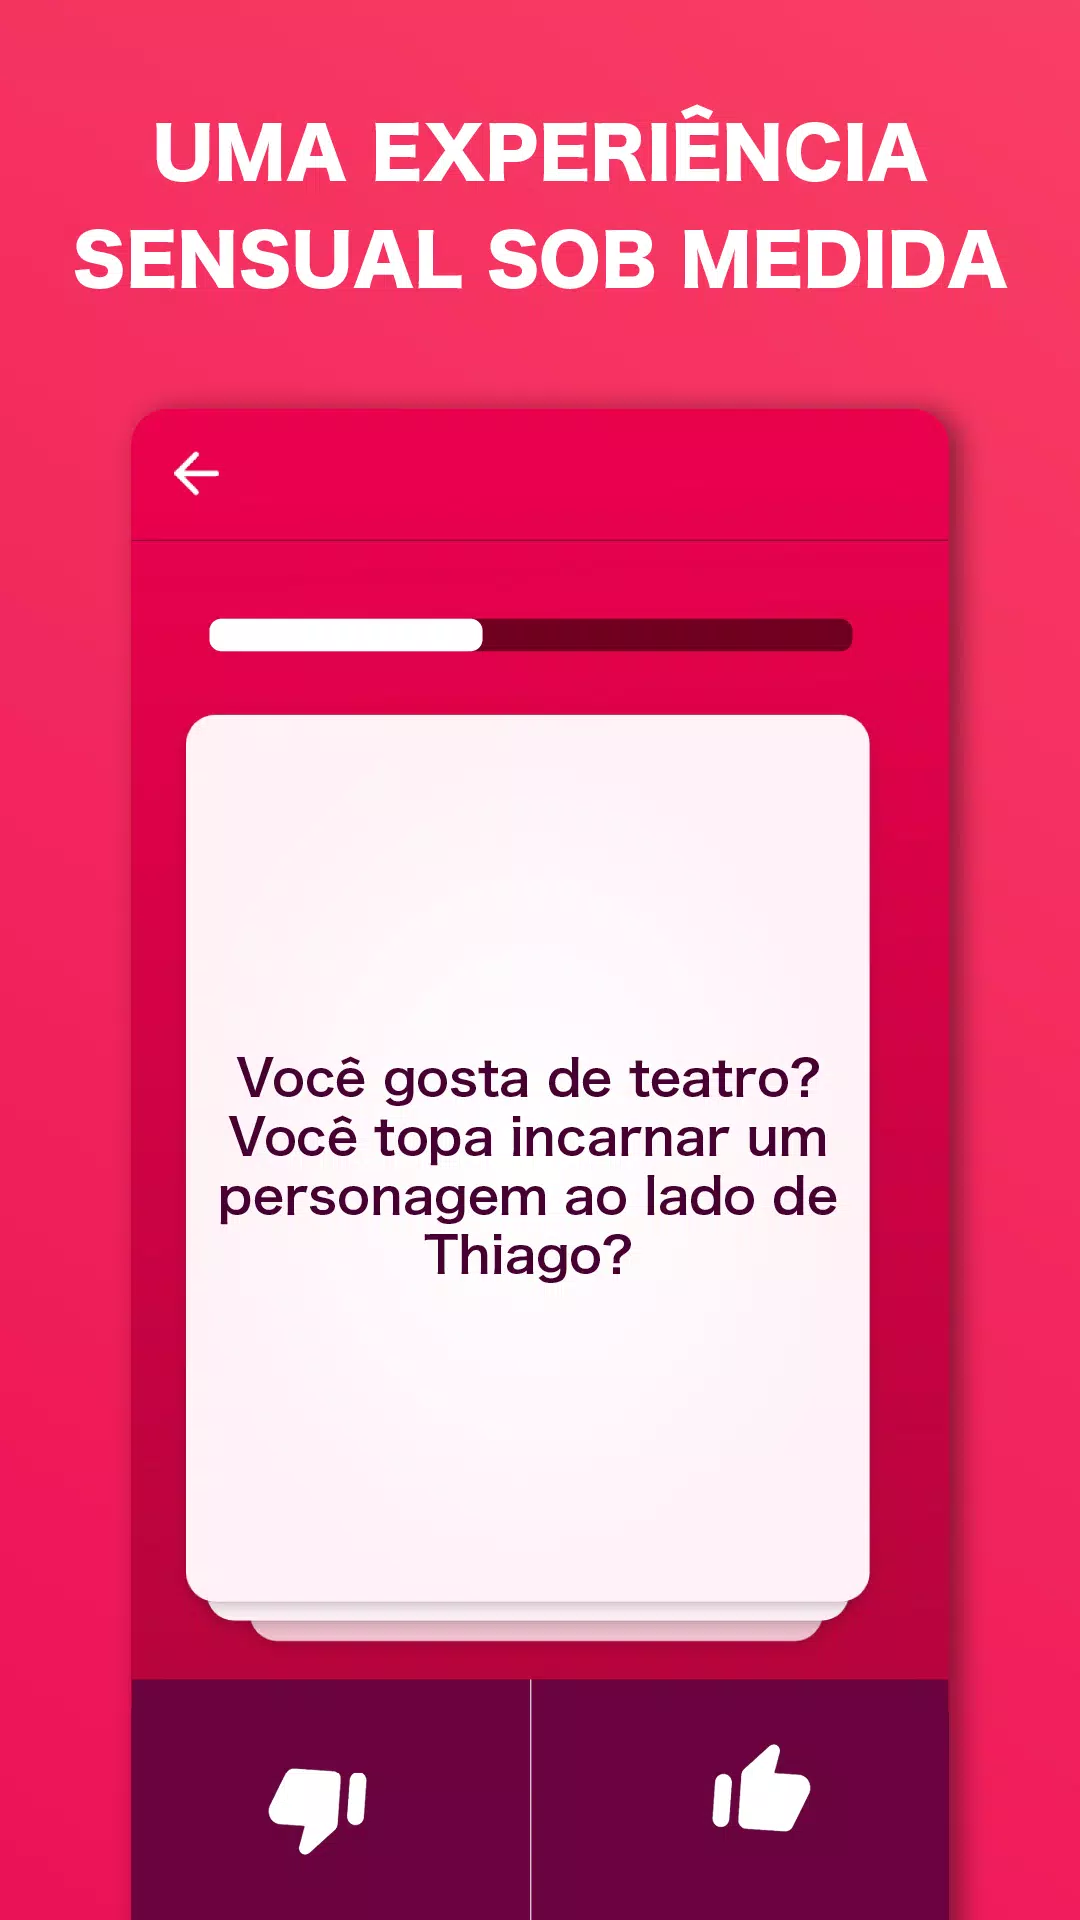 Baixar a última versão do Jogo do sexo para casais para Android grátis em  Português no CCM - CCM